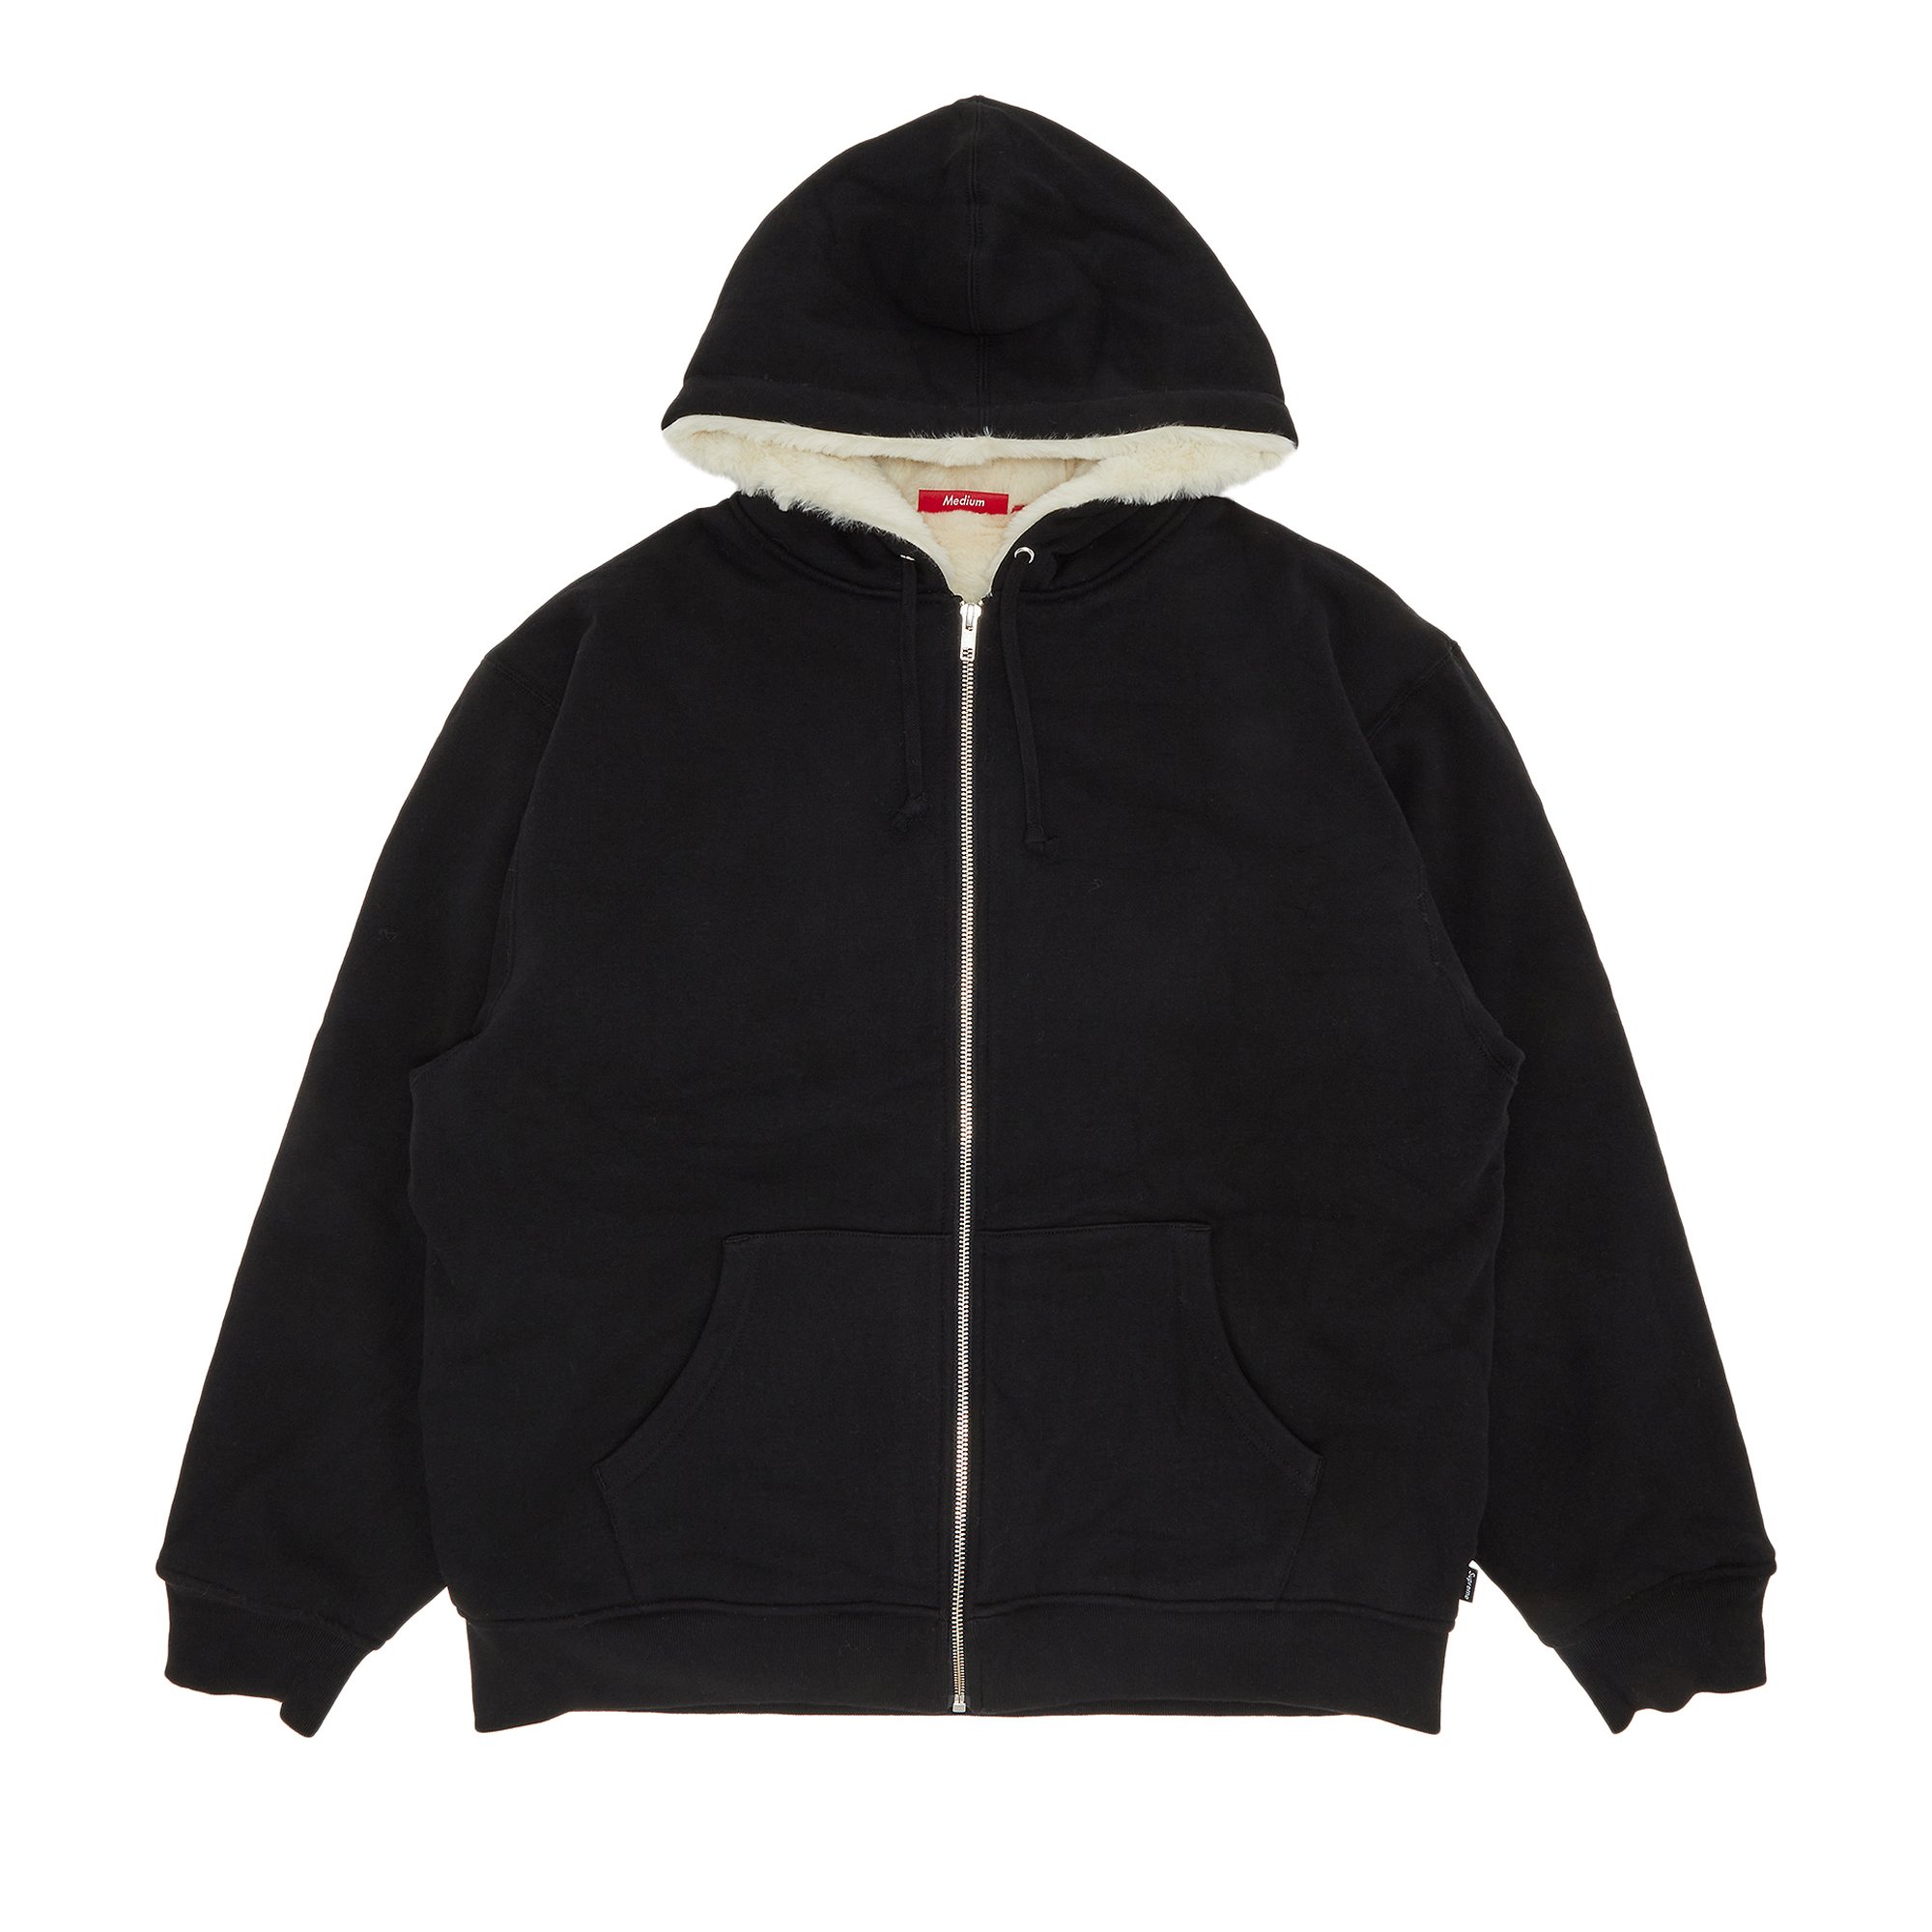 Buy Supreme Faux Fur Lined Zip Up Hooded Sweatshirt 'Black